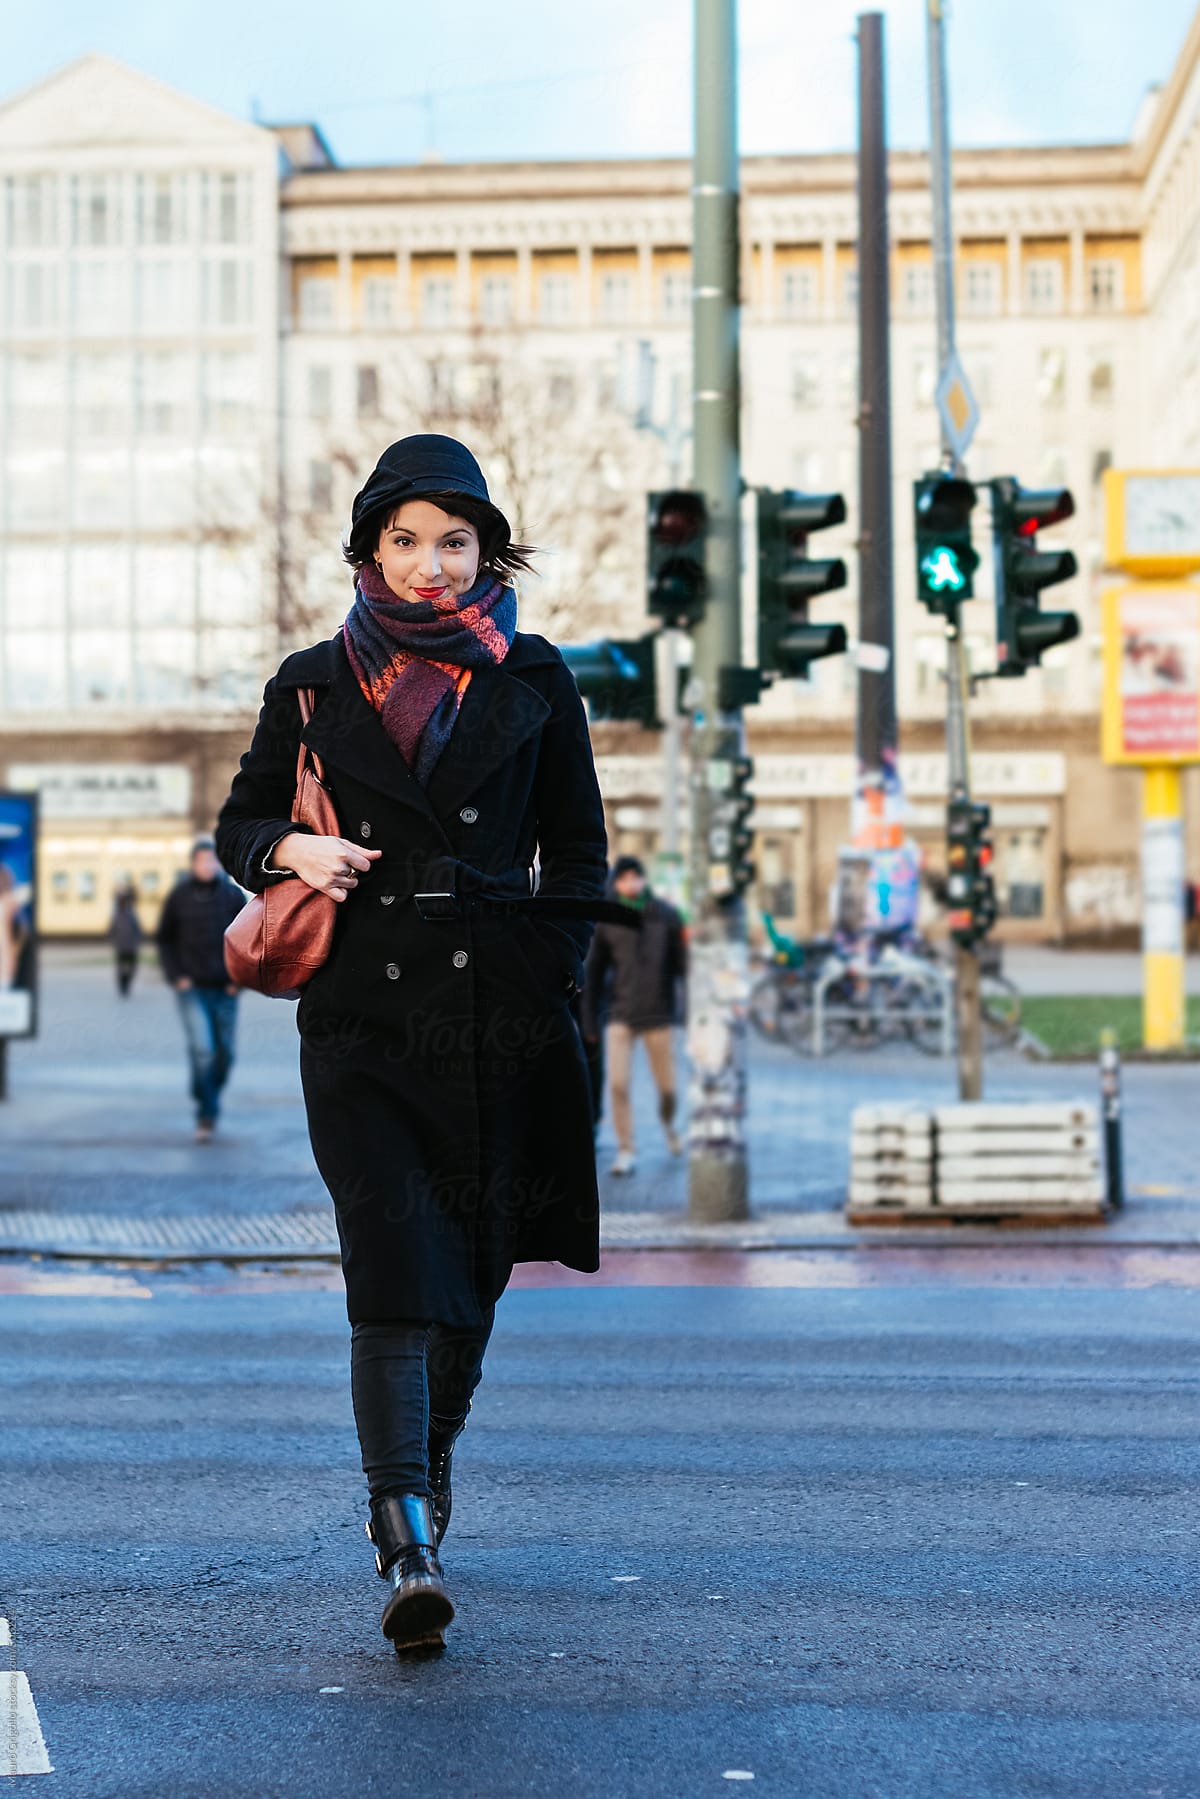 Woman walking on Streets in winter